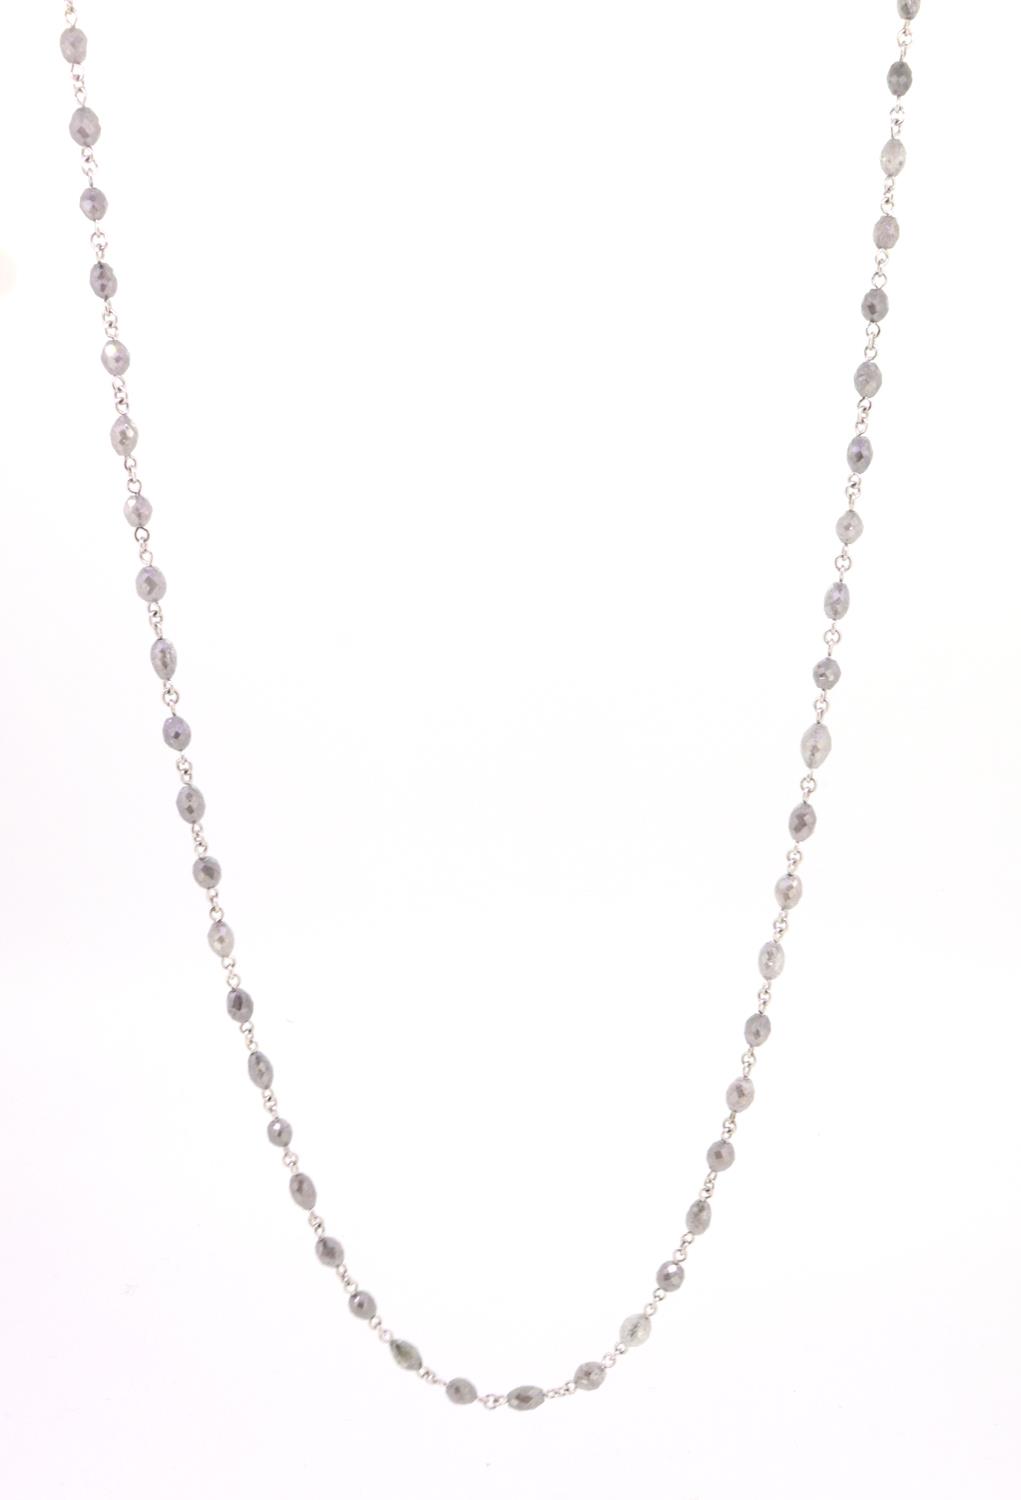 Kette Diamanten grau 18ct Weißgold - Individuelle Marken - 121dare06-3